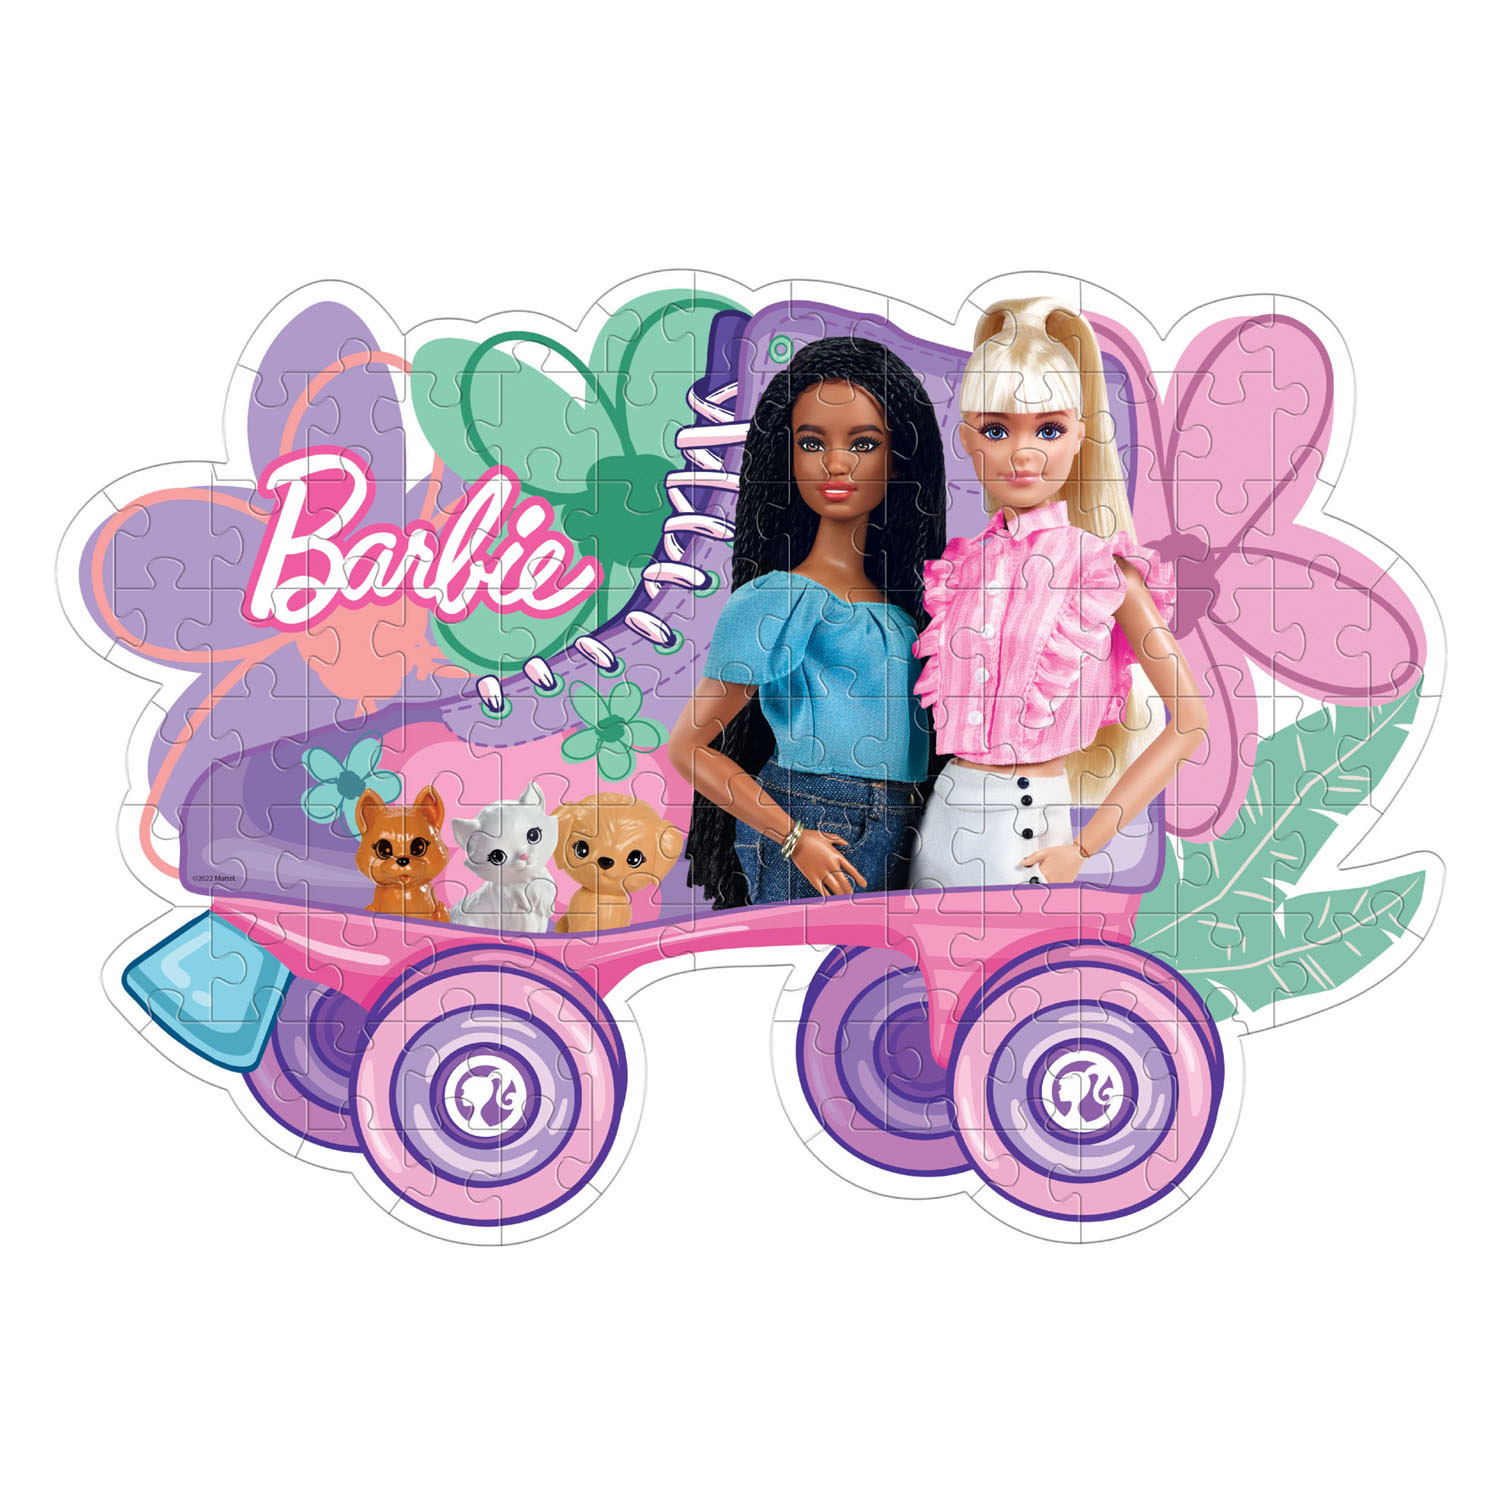 Clementoni Puzzle Super Color – Barbie Rollschuh, 104 Teile.